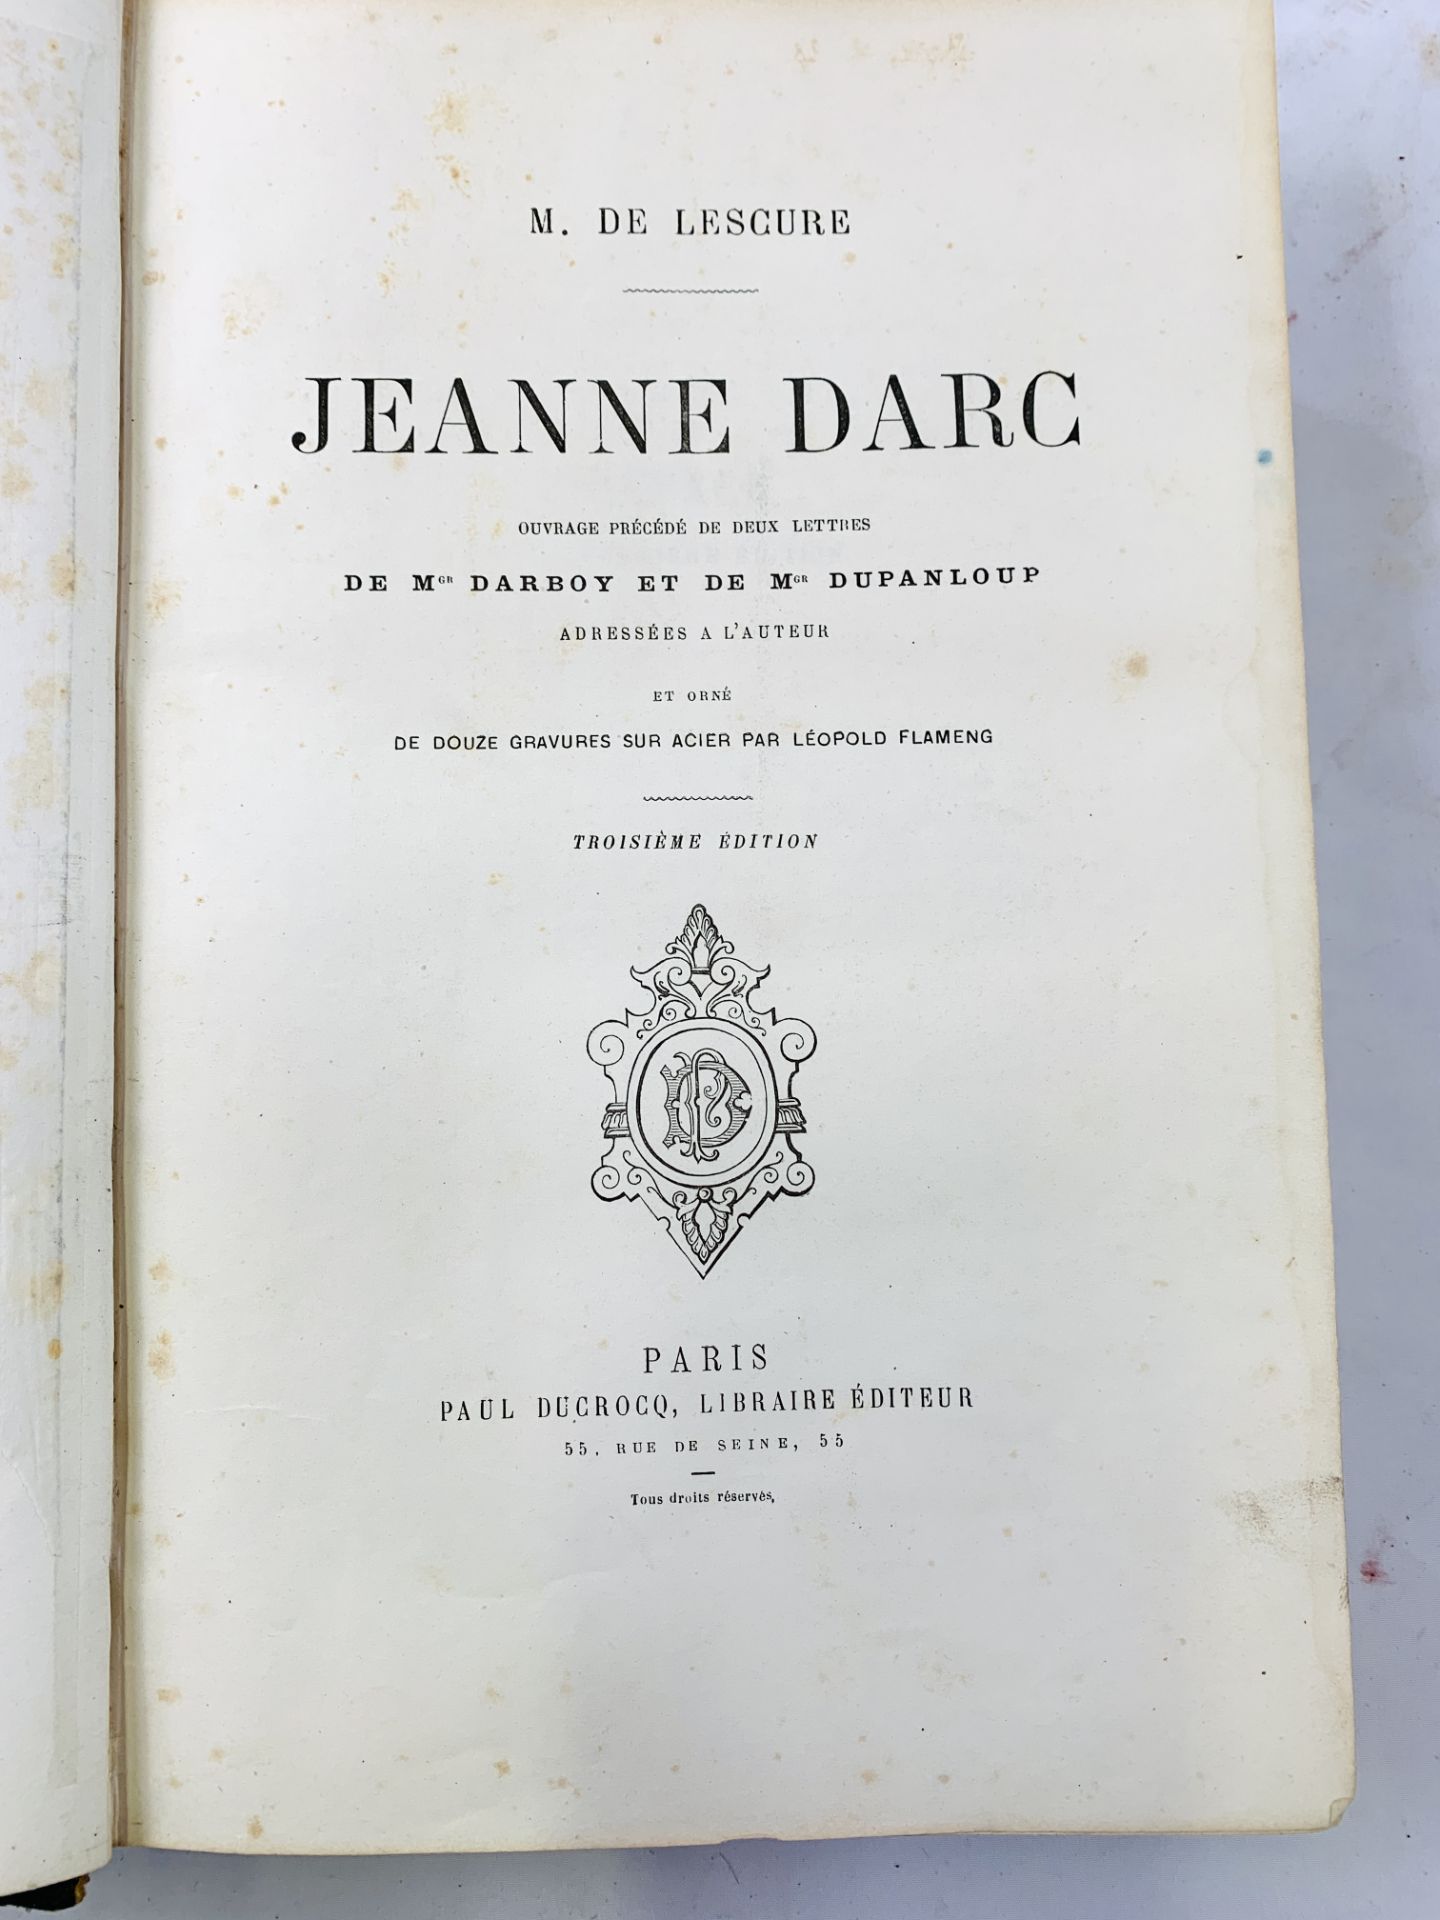 Jeanne Darc by M. de Lescure, 1873, and Les Confessions de Rousseau, 1879 - Image 5 of 5